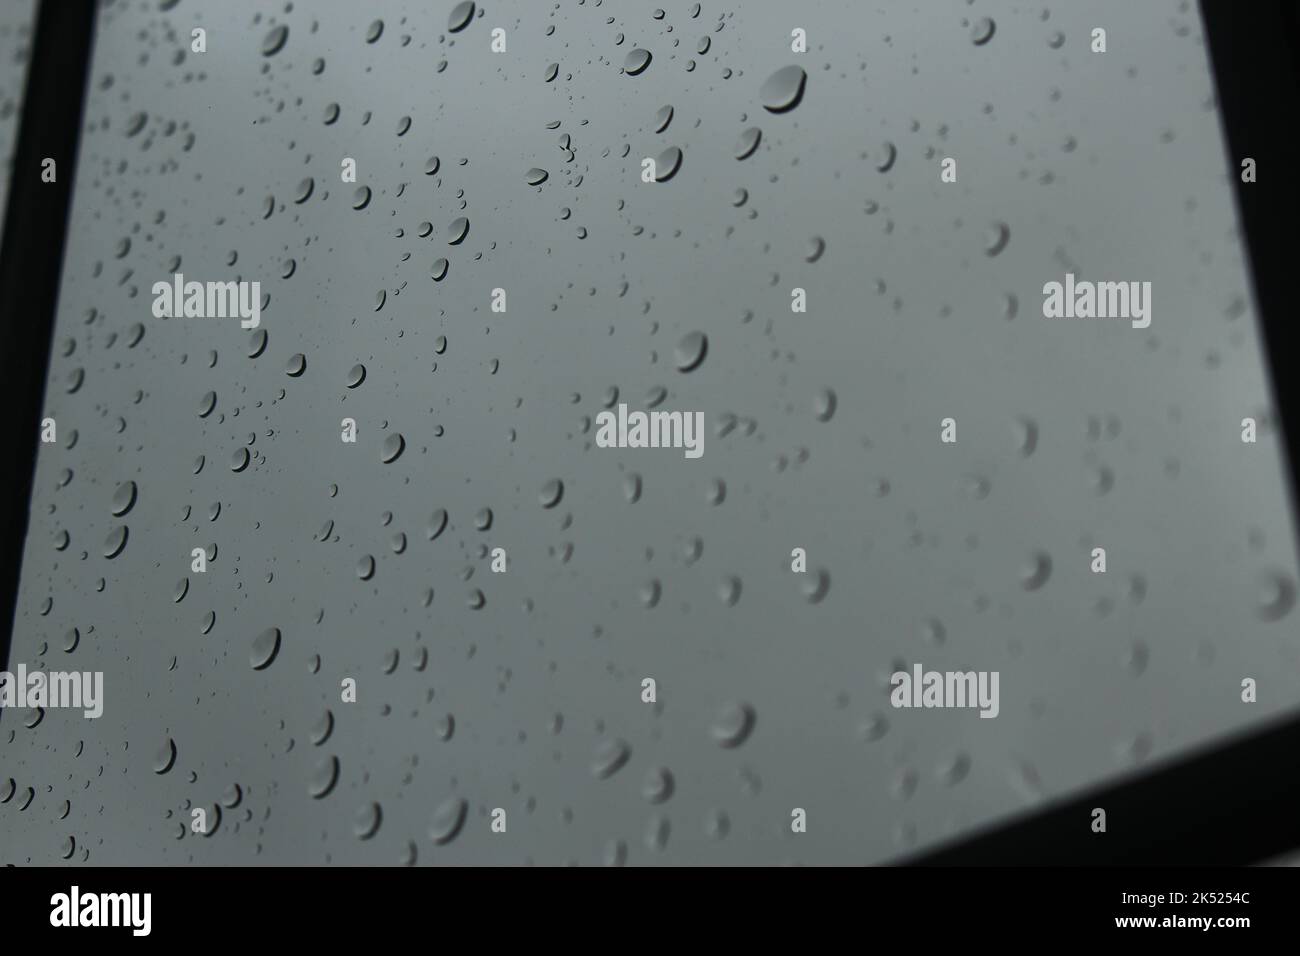 An einem bewölkten, nebligen Tag fällt Regen auf das klare Glasfenster. Konzept für Low Mood, Depression, aus der Art, grau, traurig, Regnerische Tage, in Innenräumen stecken geblieben Stockfoto